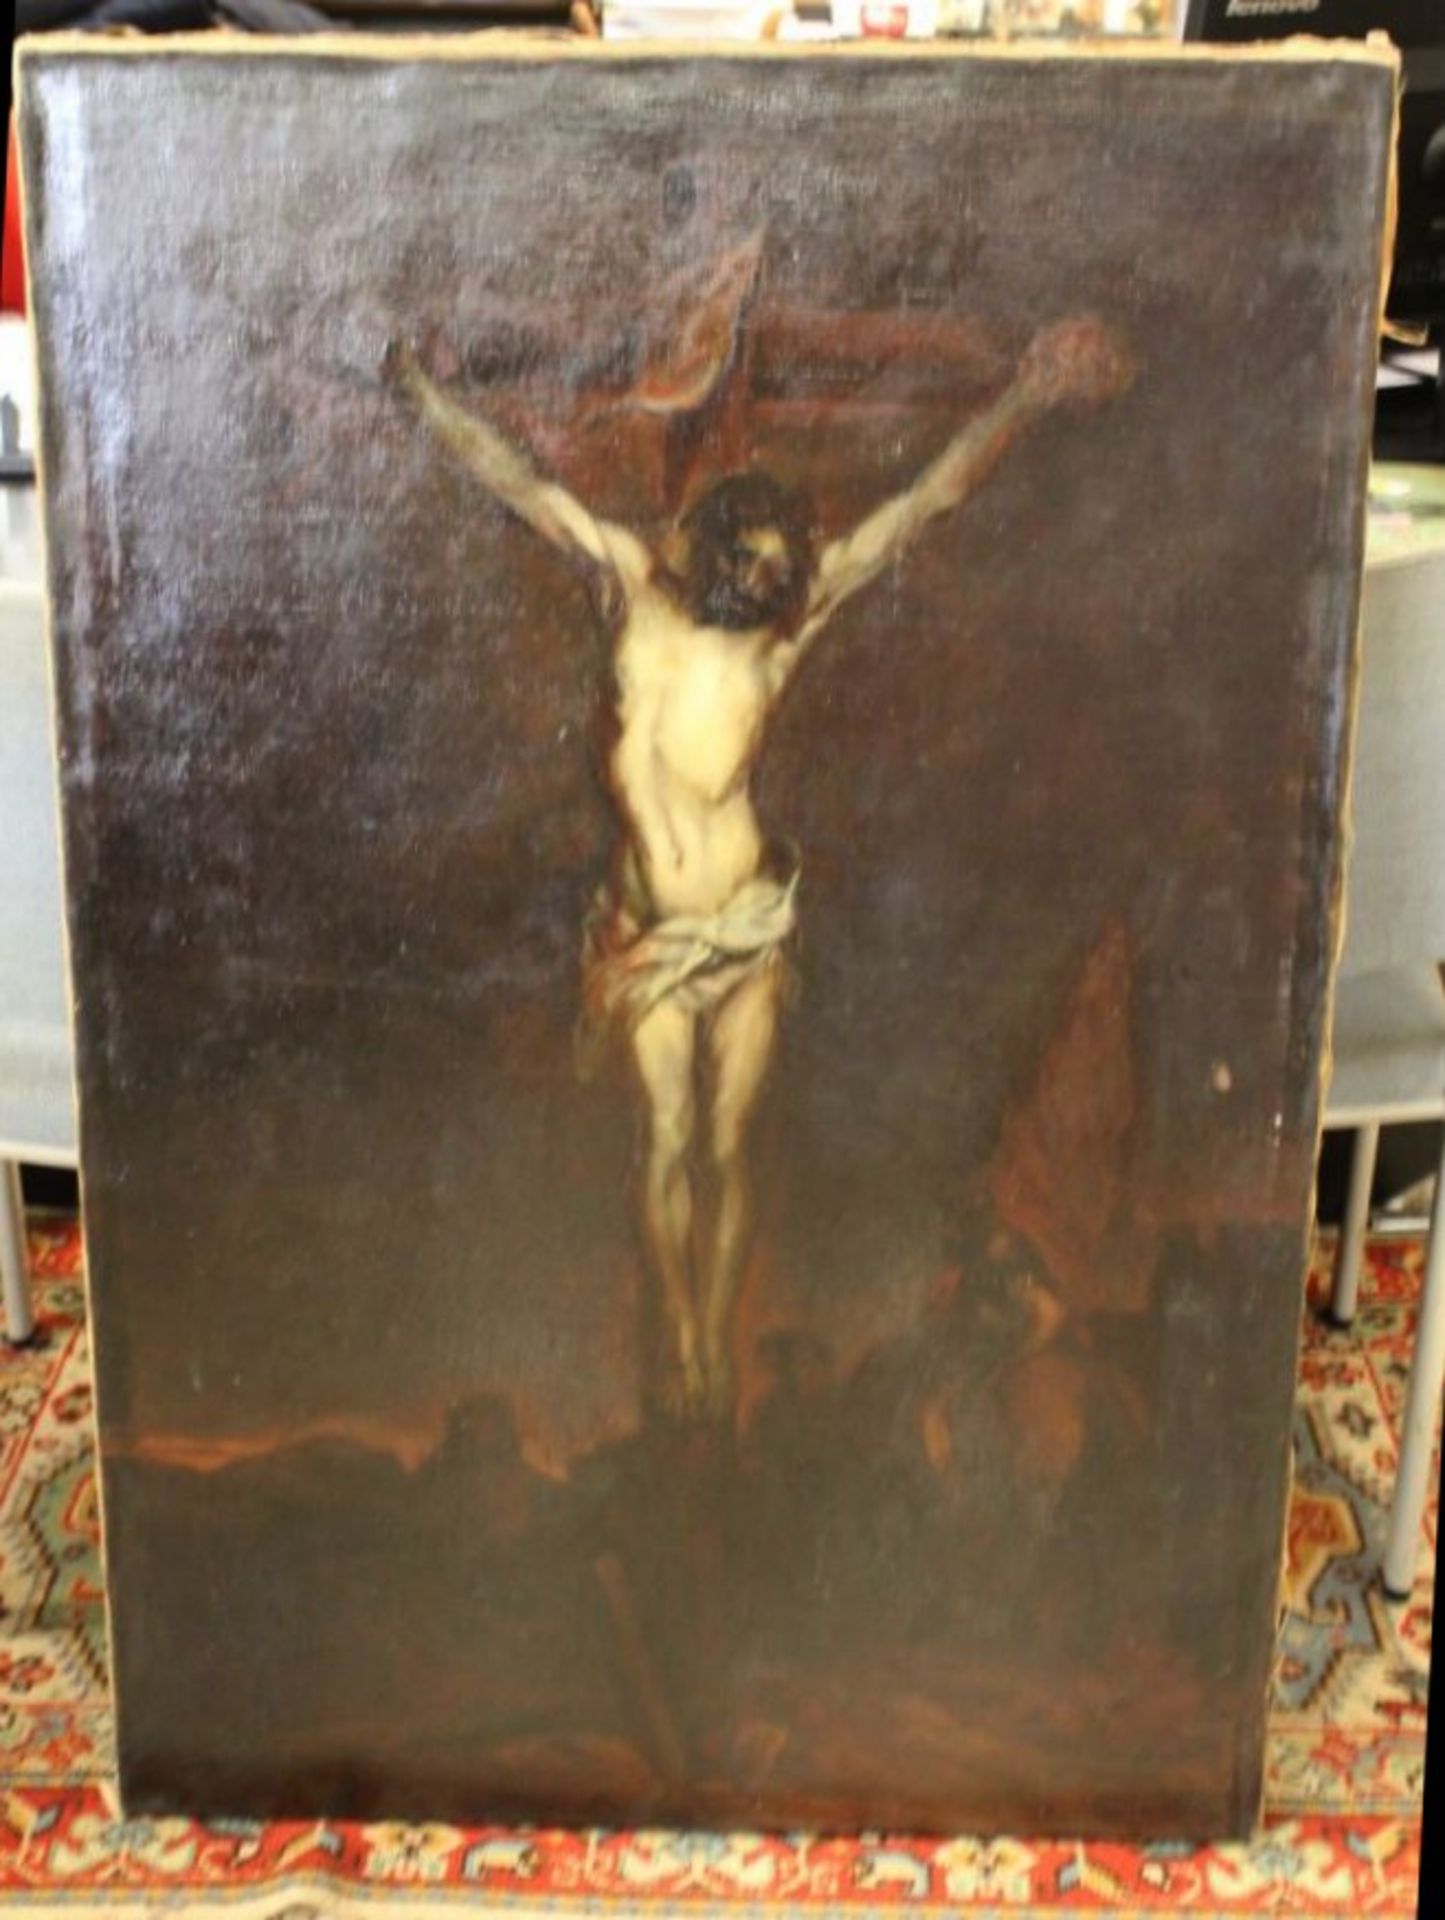 Max HEIN-NEUFELDT (1874-1953), Christus am Kreuz, Kopie nach van Dyck, datiert 1901, Öl/Leinwand, 1x - Bild 2 aus 4